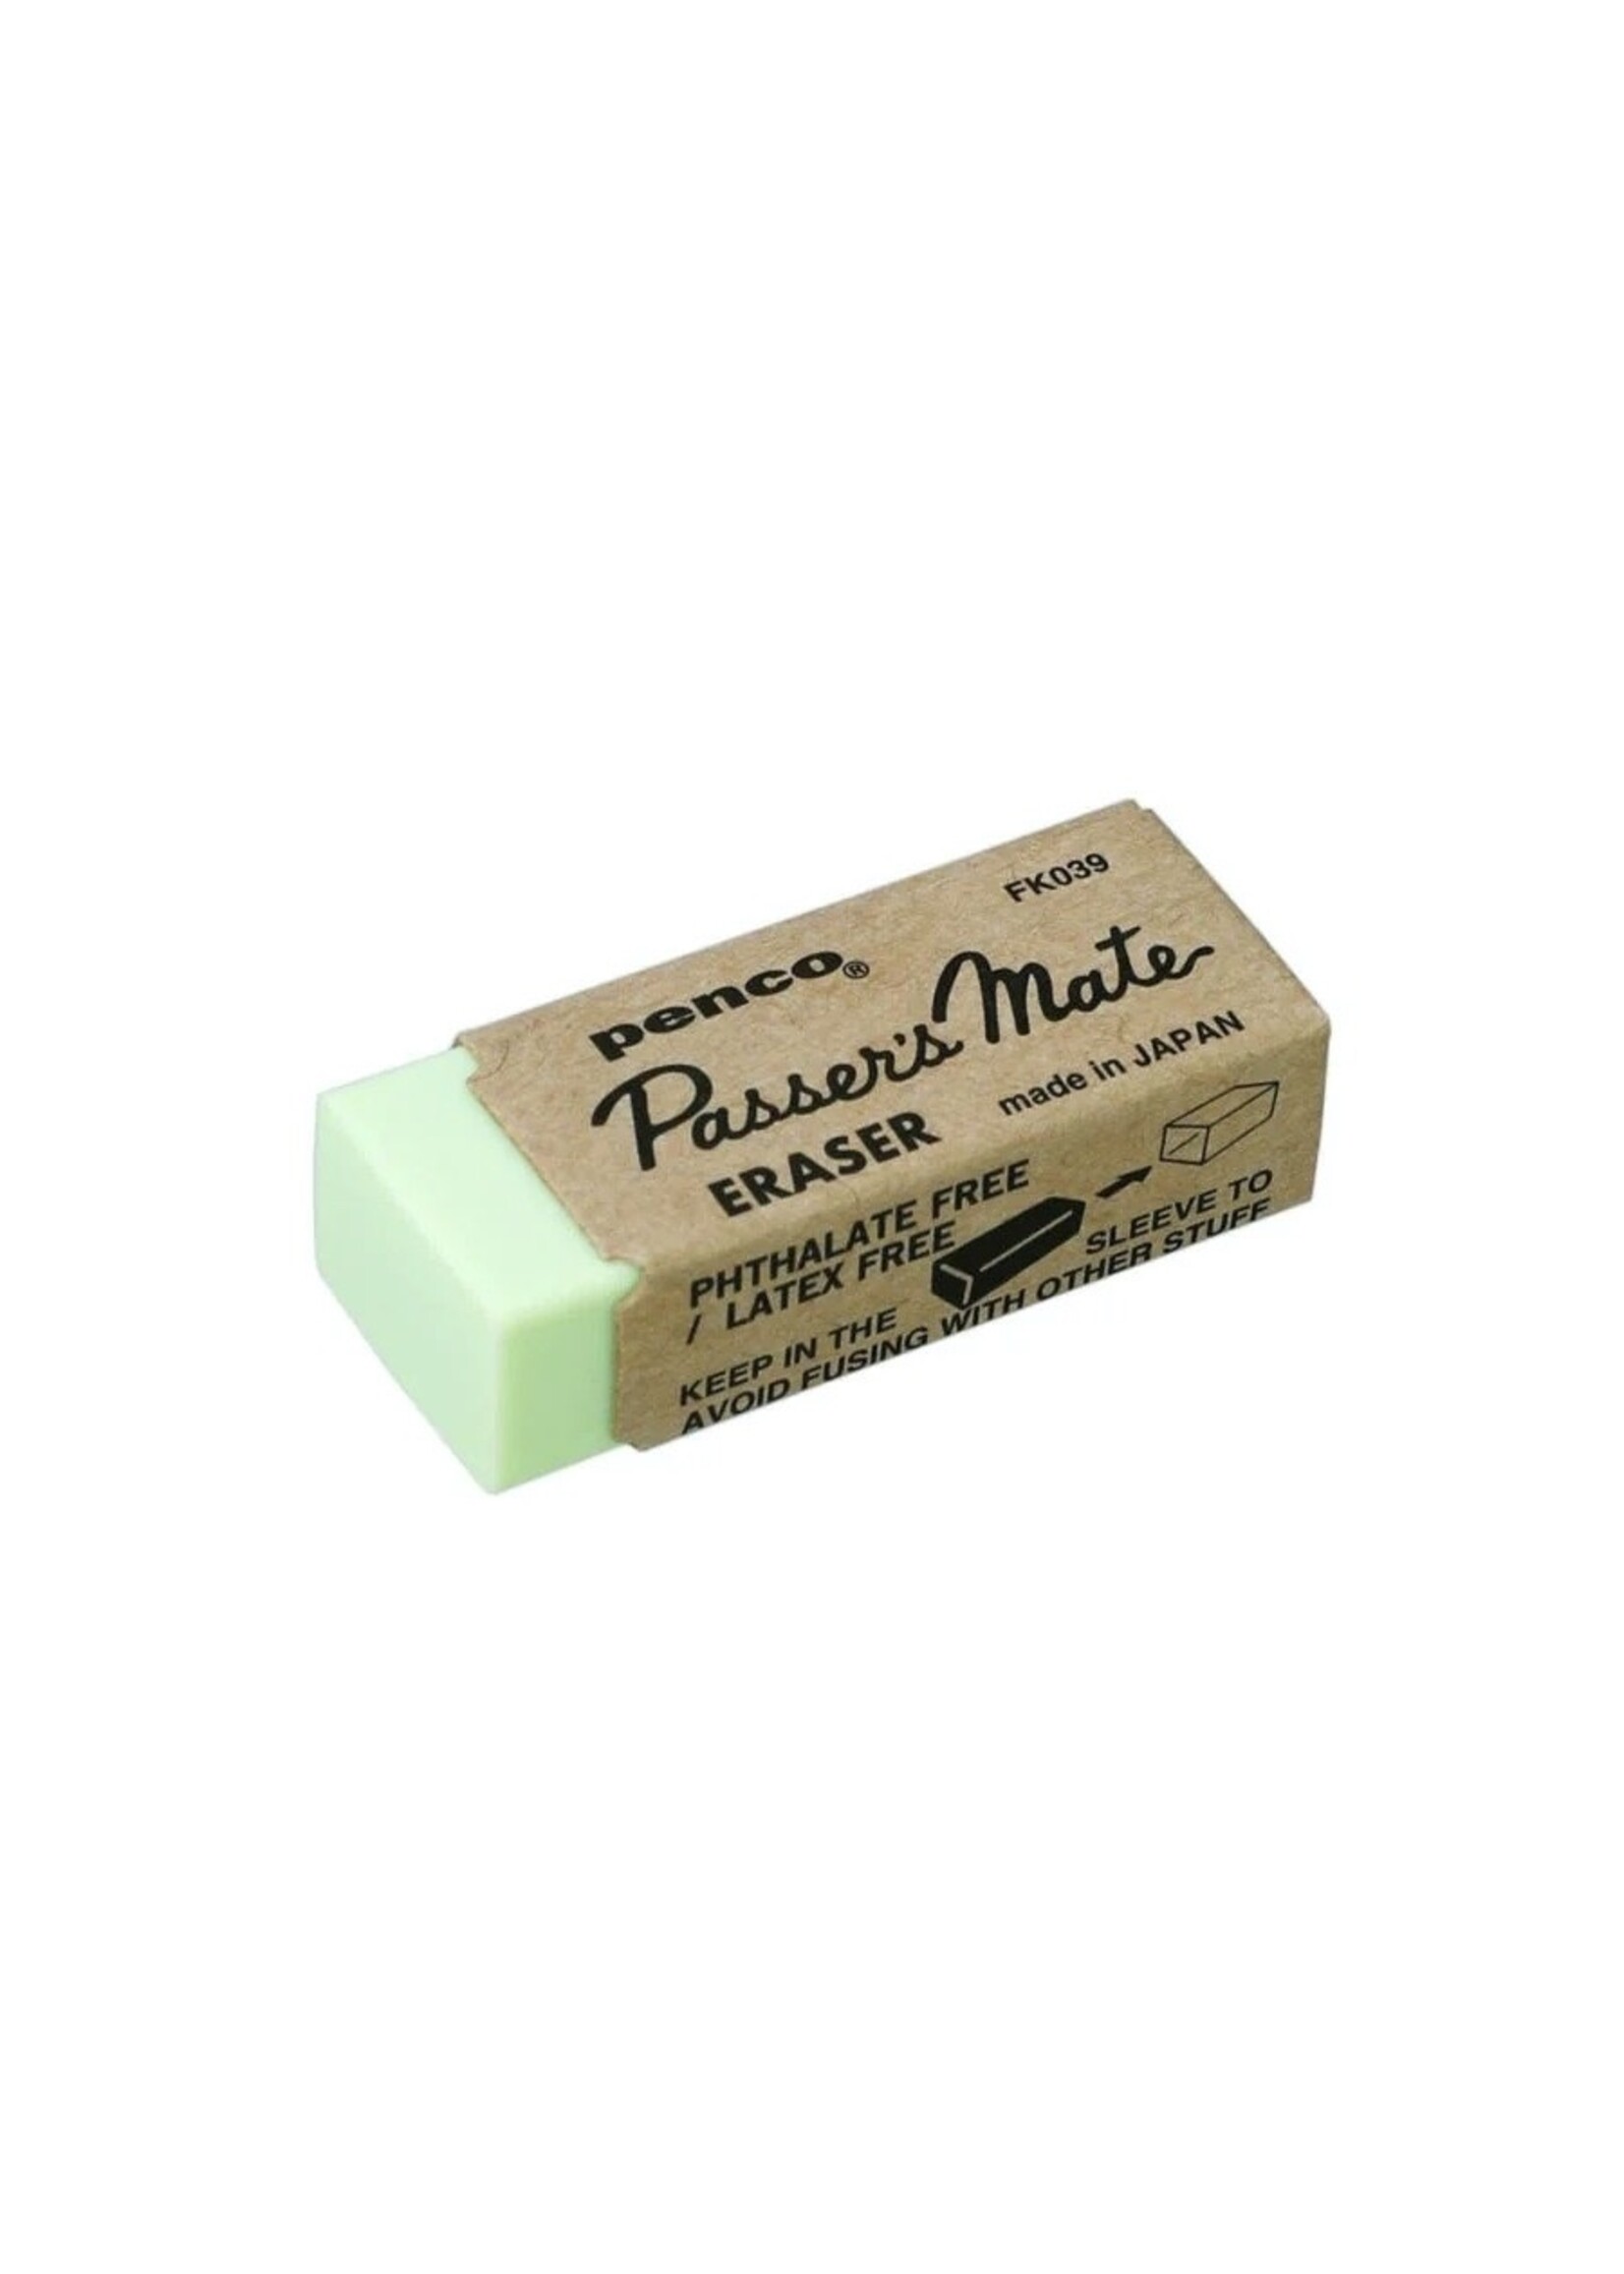 Penco Eraser by Penco